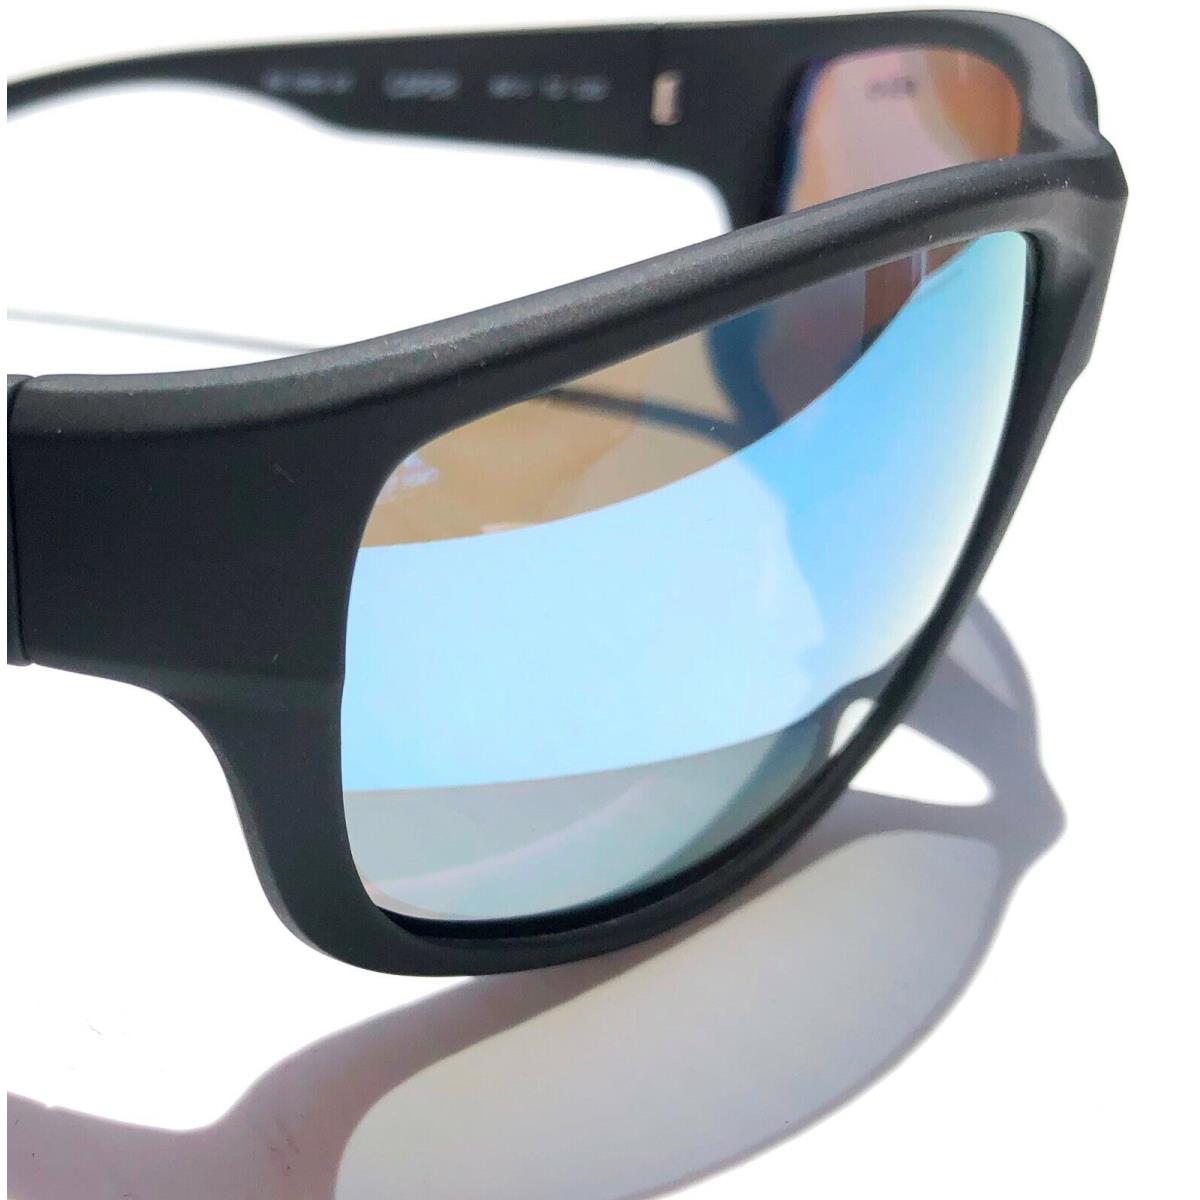 Revo sunglasses Bear Grylls Caper - Matte Black Frame, Blue Lens